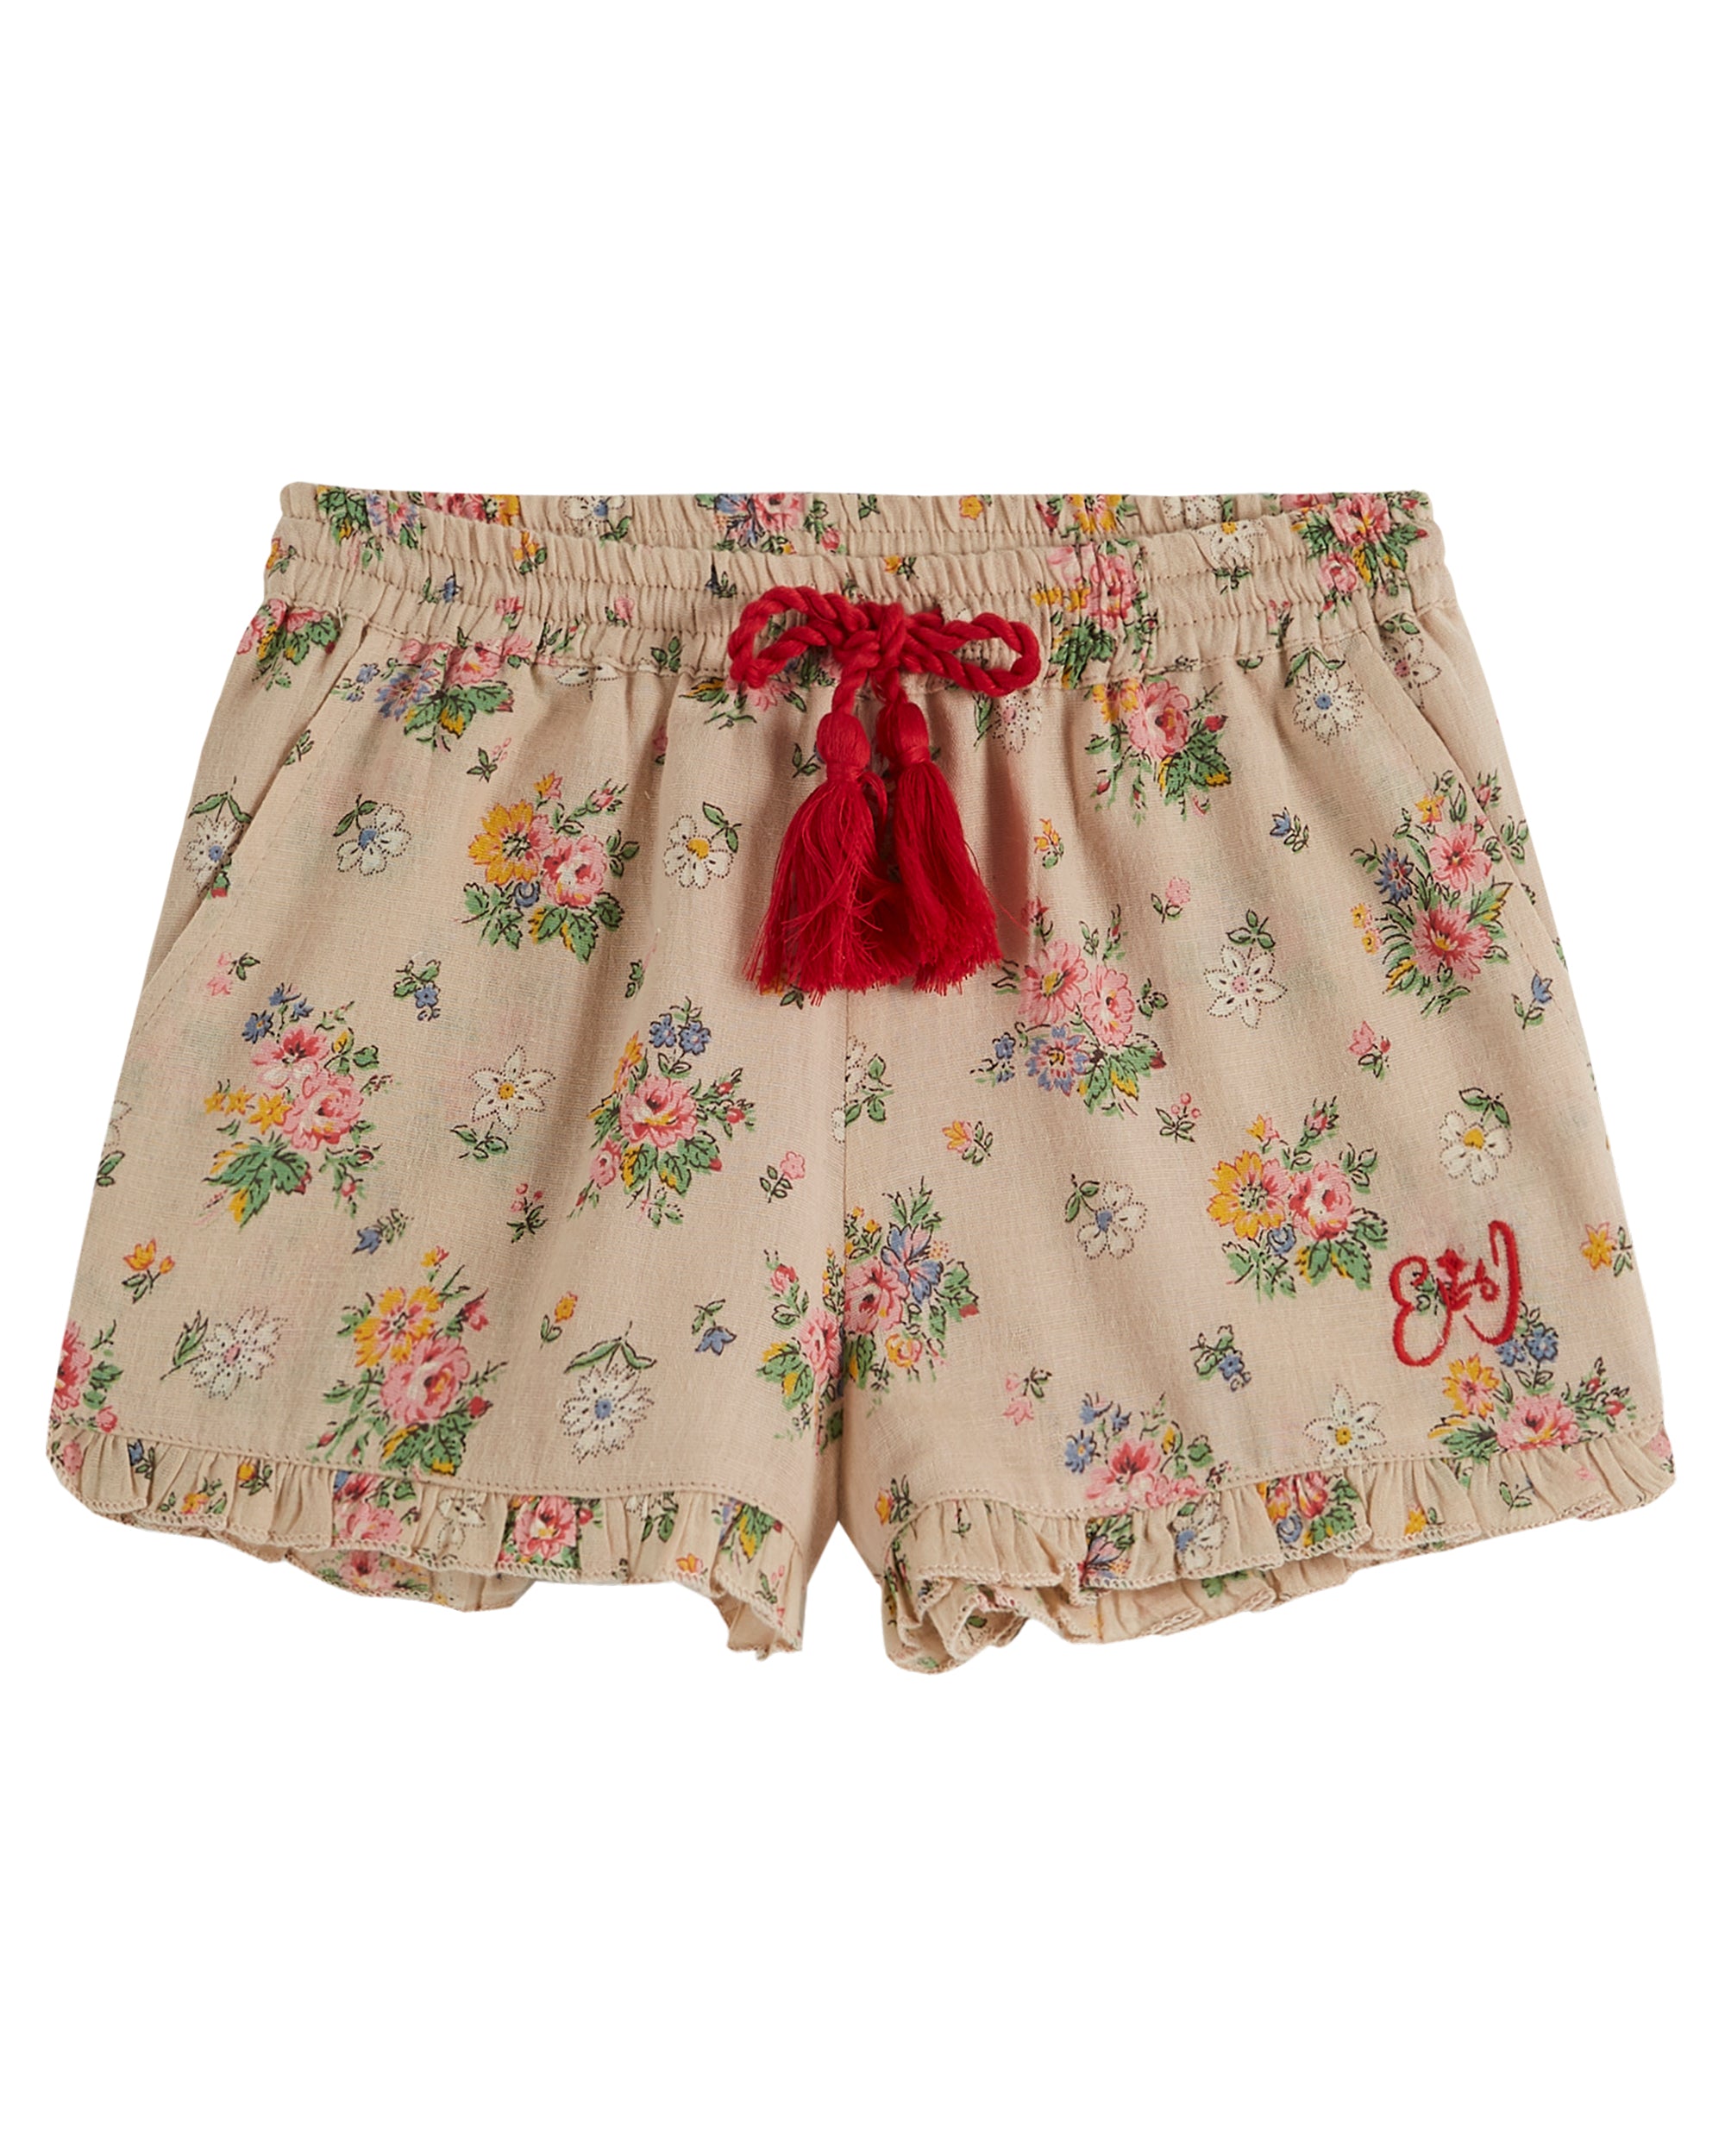 Vintage Floral Short